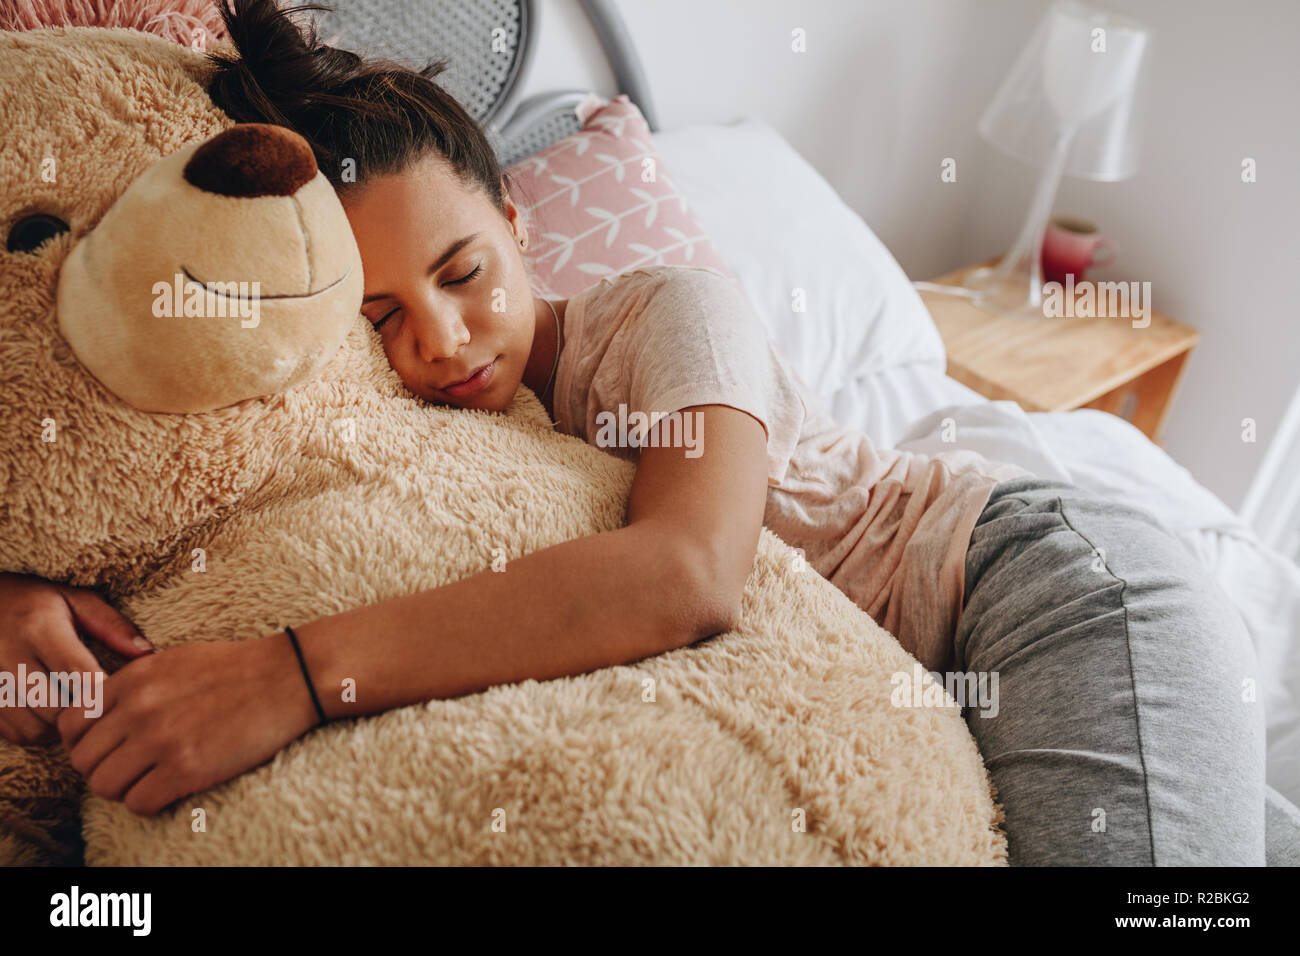 Jeune fille dormir avec ses bras autour d'un grand ours en peluche sur le lit. Girl sleeping on bed serrant un ours en peluche brun. Banque D'Images